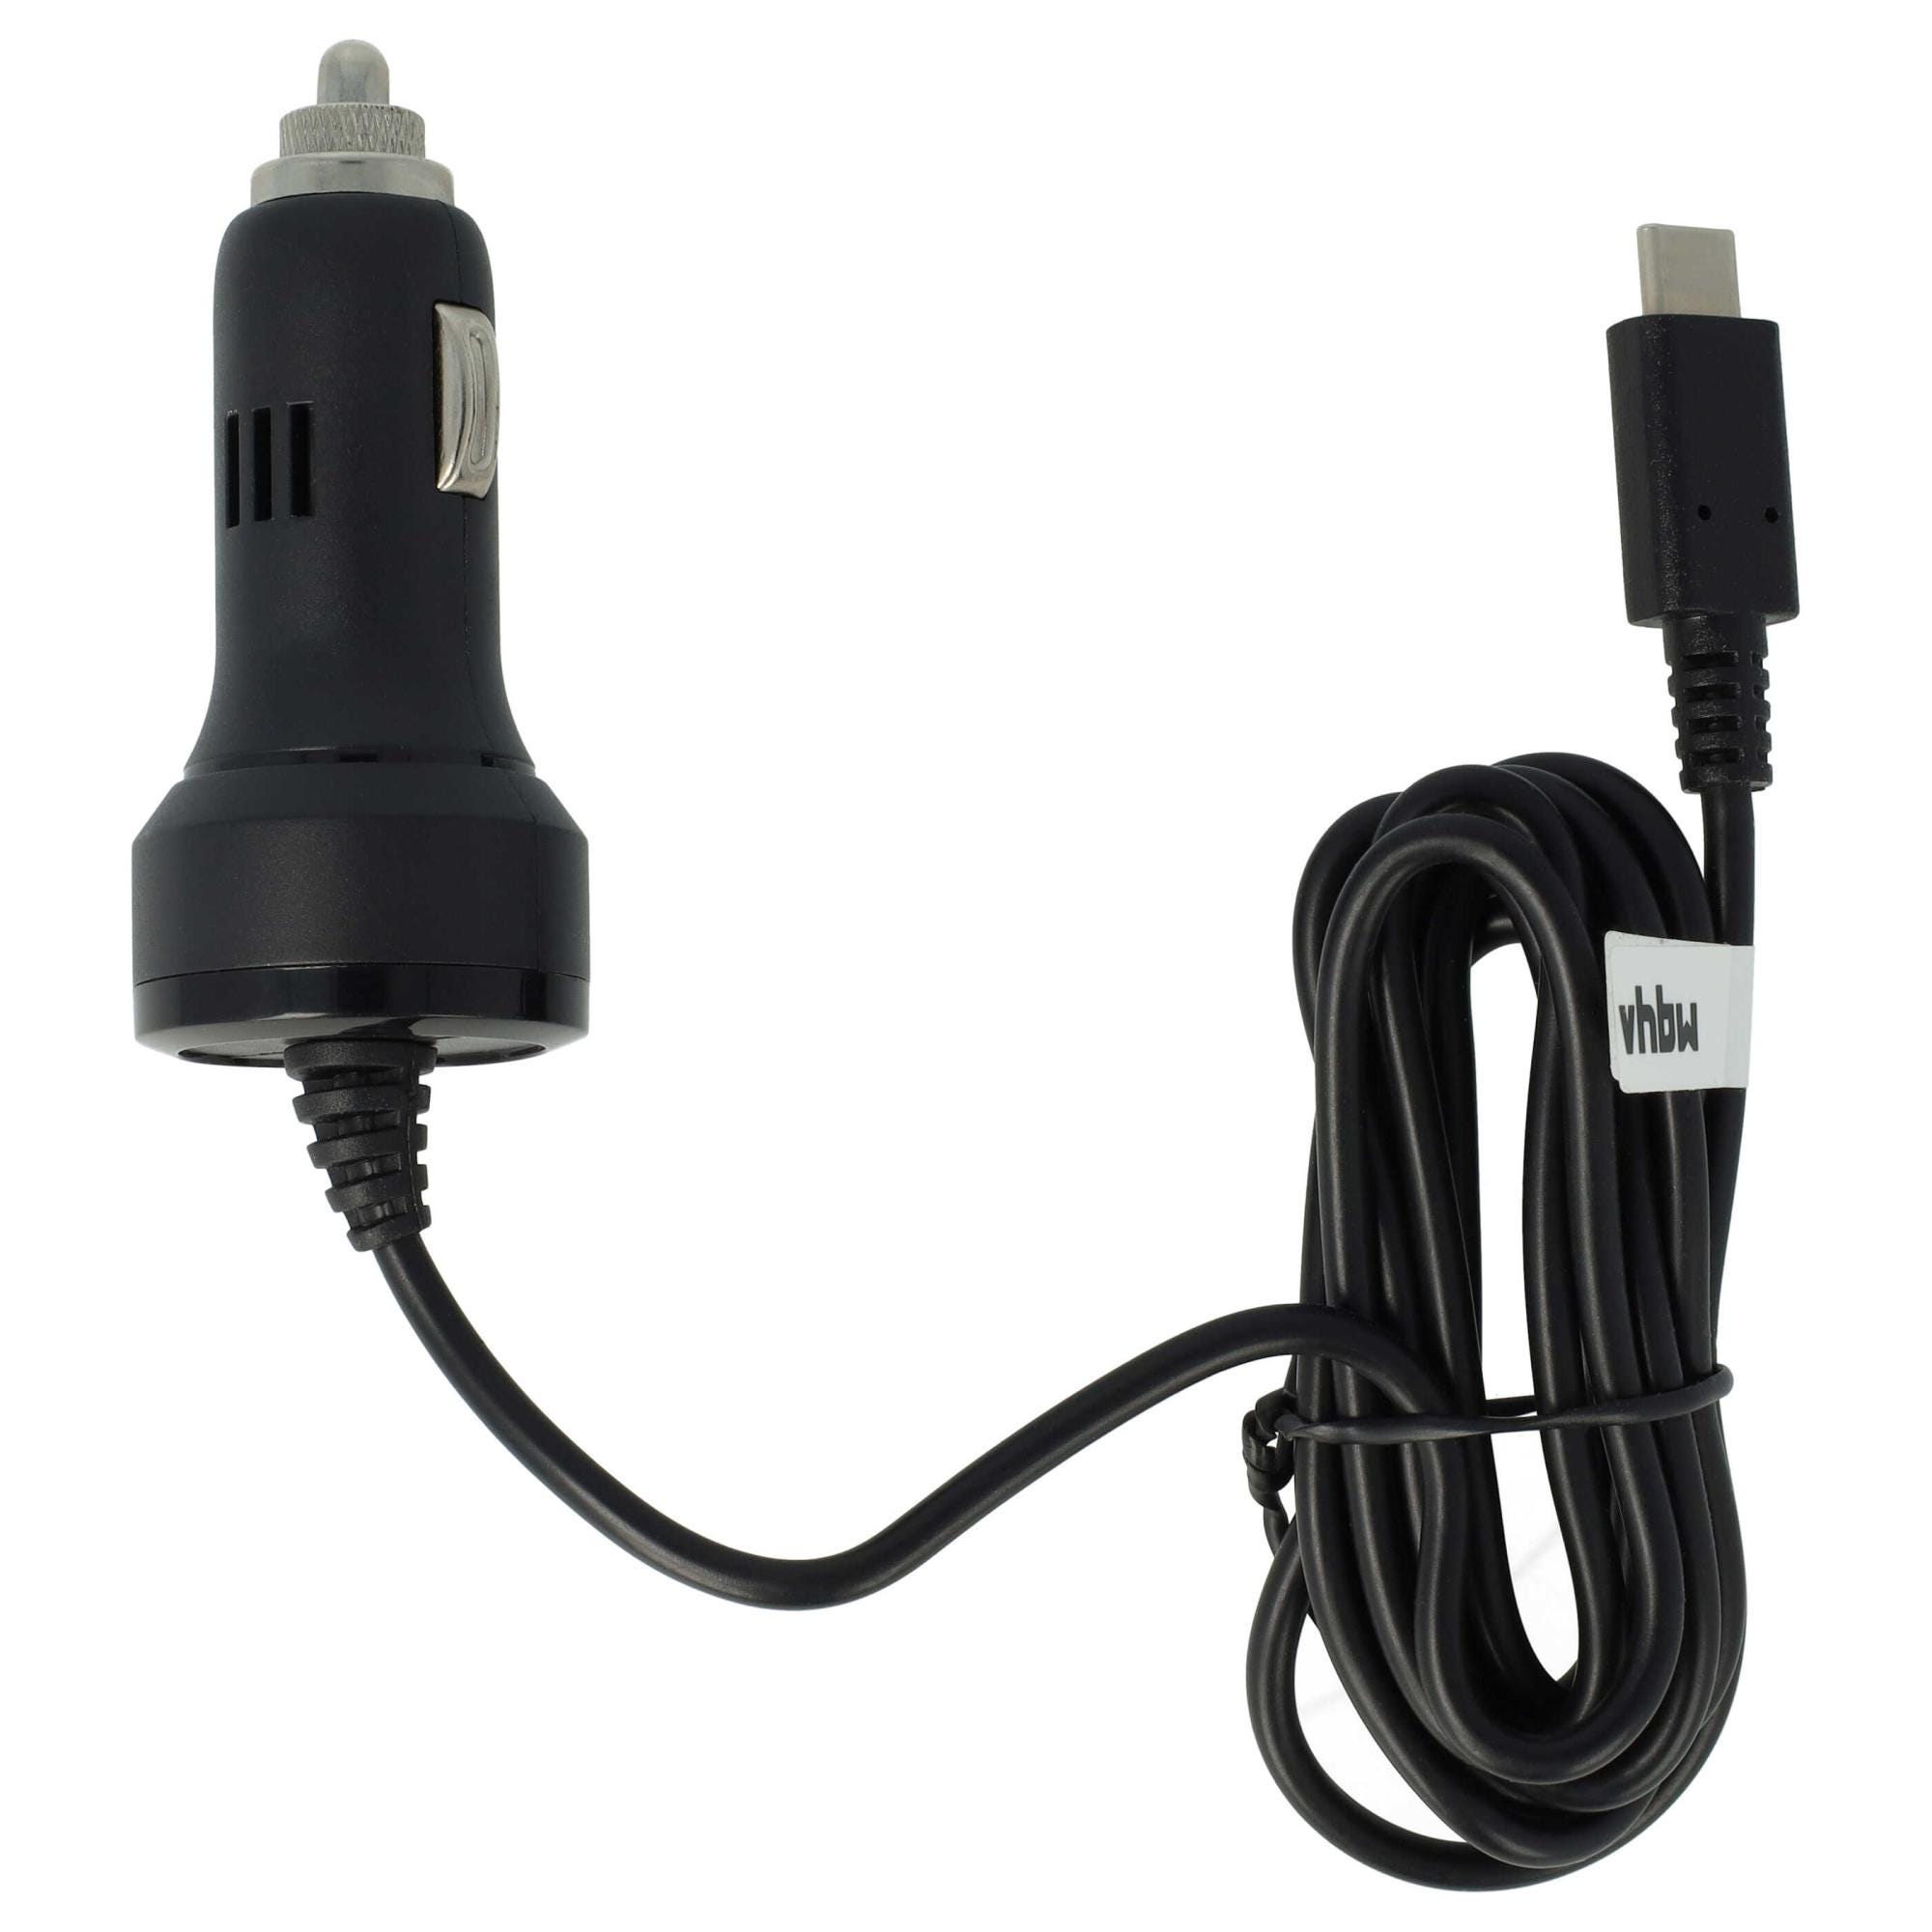 Sans Marque Chargeur Rapide Allume Cigare de voiture - 2 ports USB